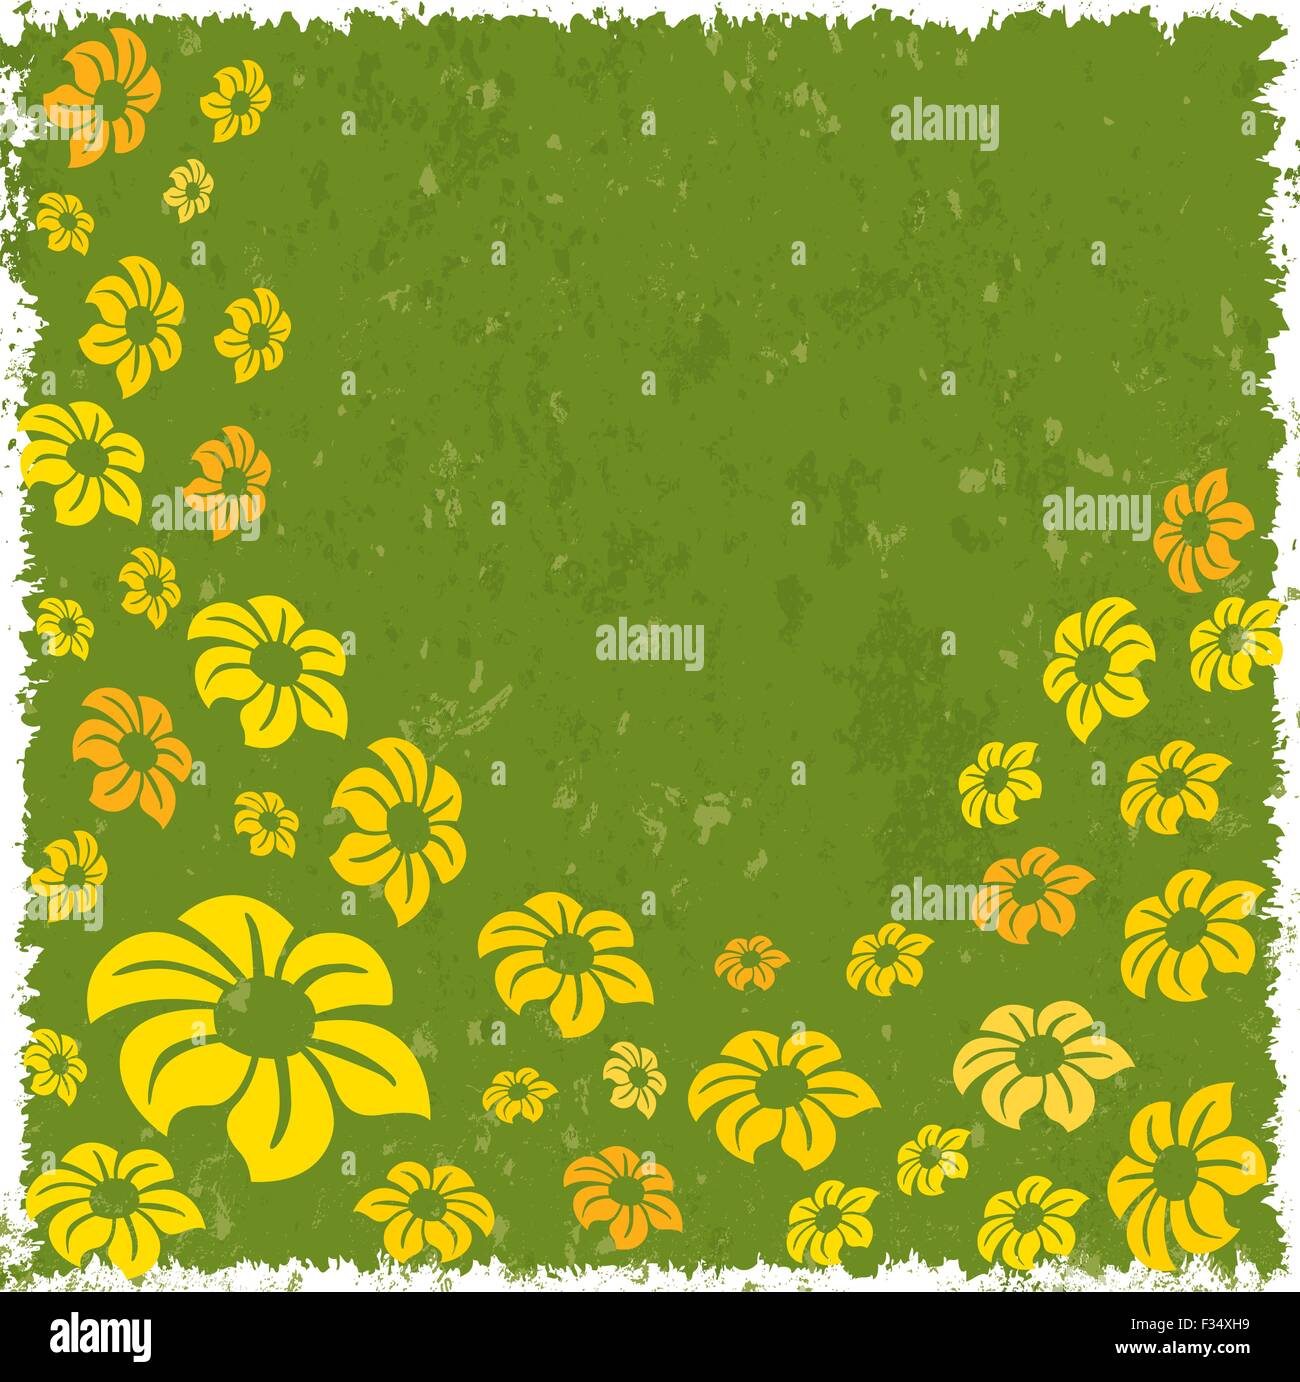 Les fleurs avec grunge background Illustration de Vecteur